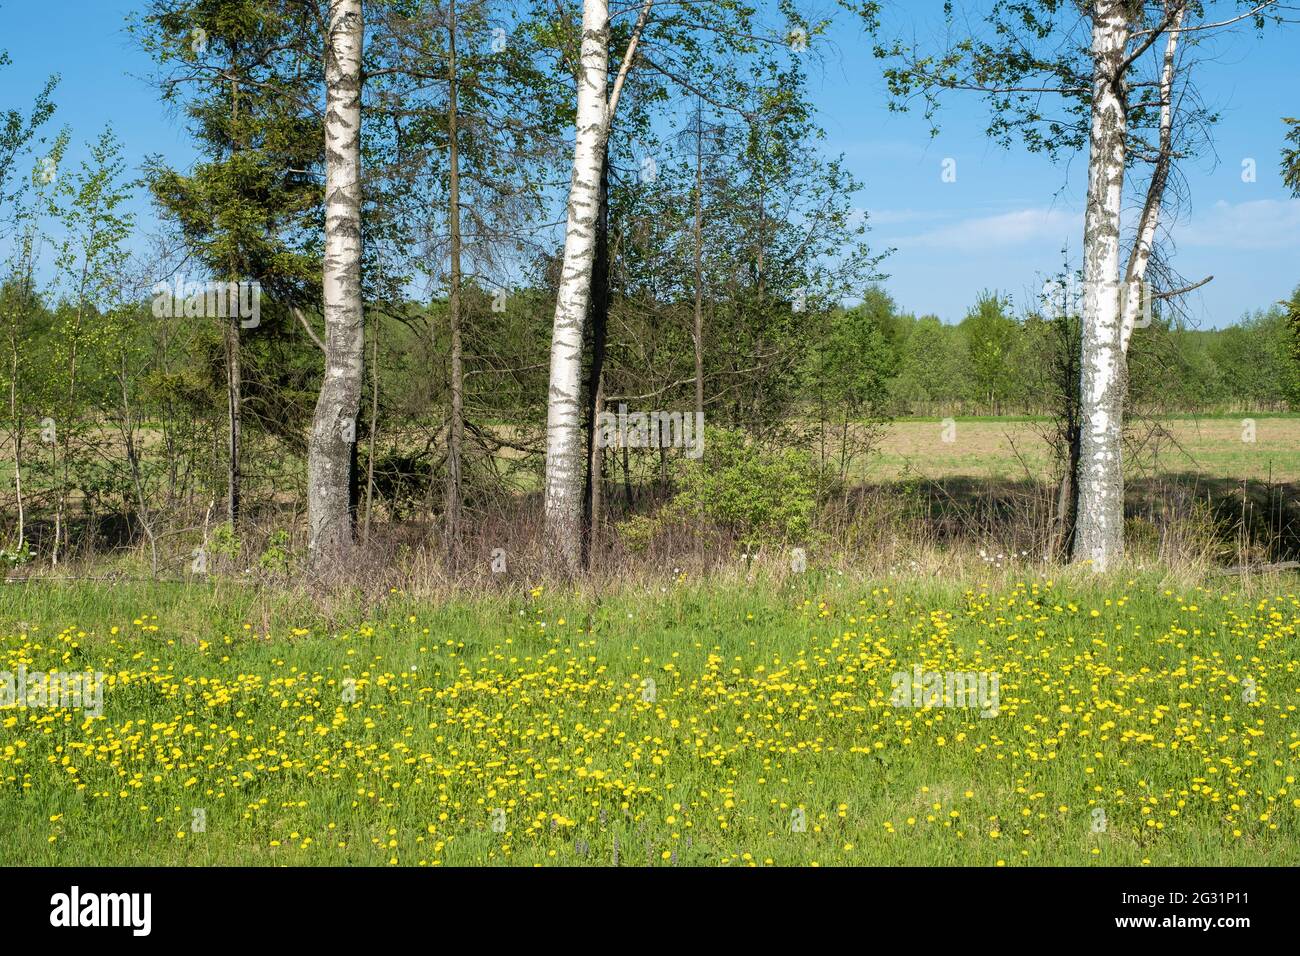 Fiori gialli di dente di leone e tronchi bianchi di betulla sullo sfondo di una foresta verde, la Russia. Foto Stock